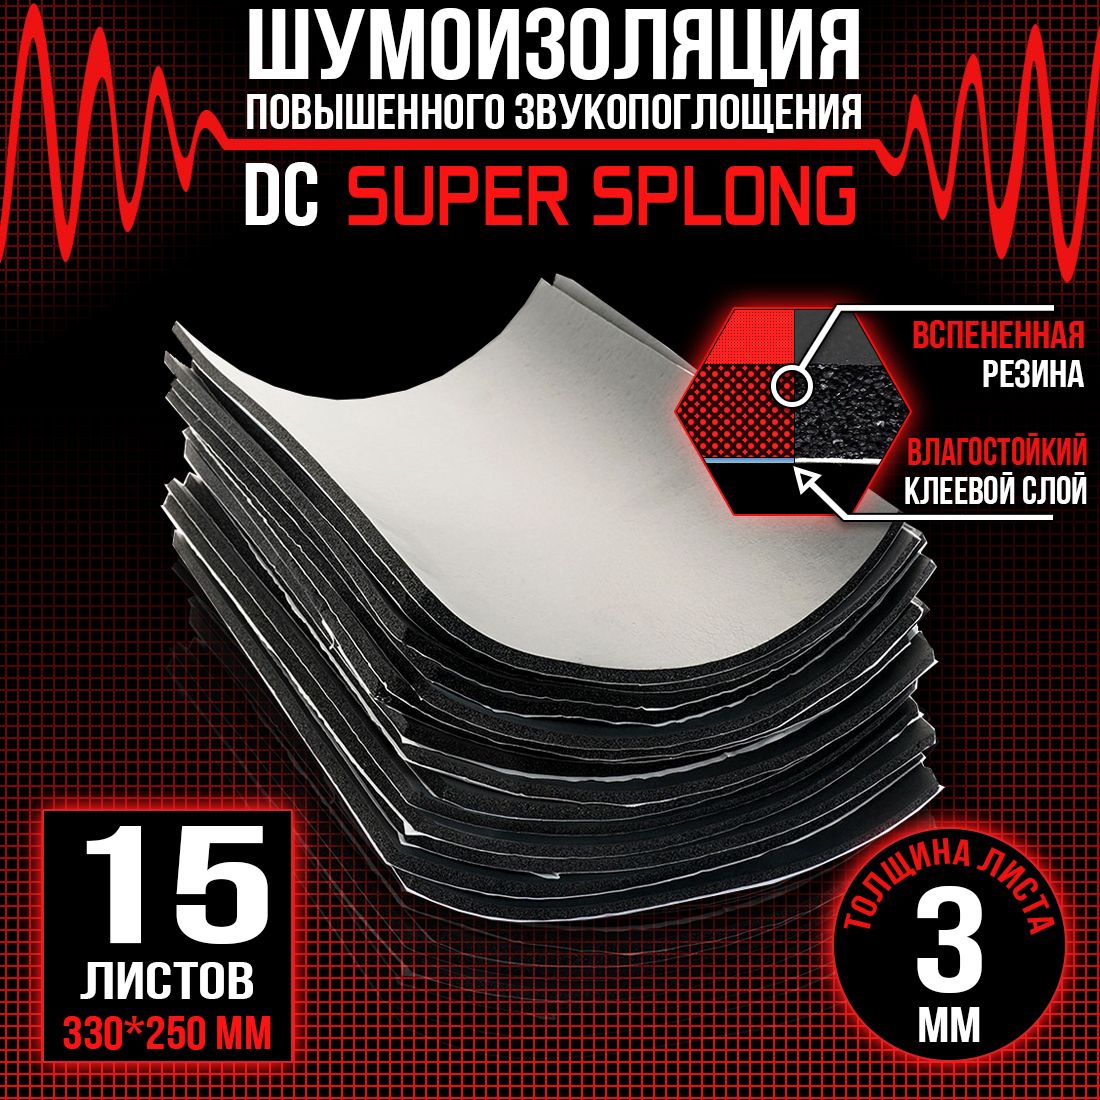 5 листов - Звукоизоляция с повышенным звукопоглощением DreamCar Super Splong 3мм 33х25см - 5 листов